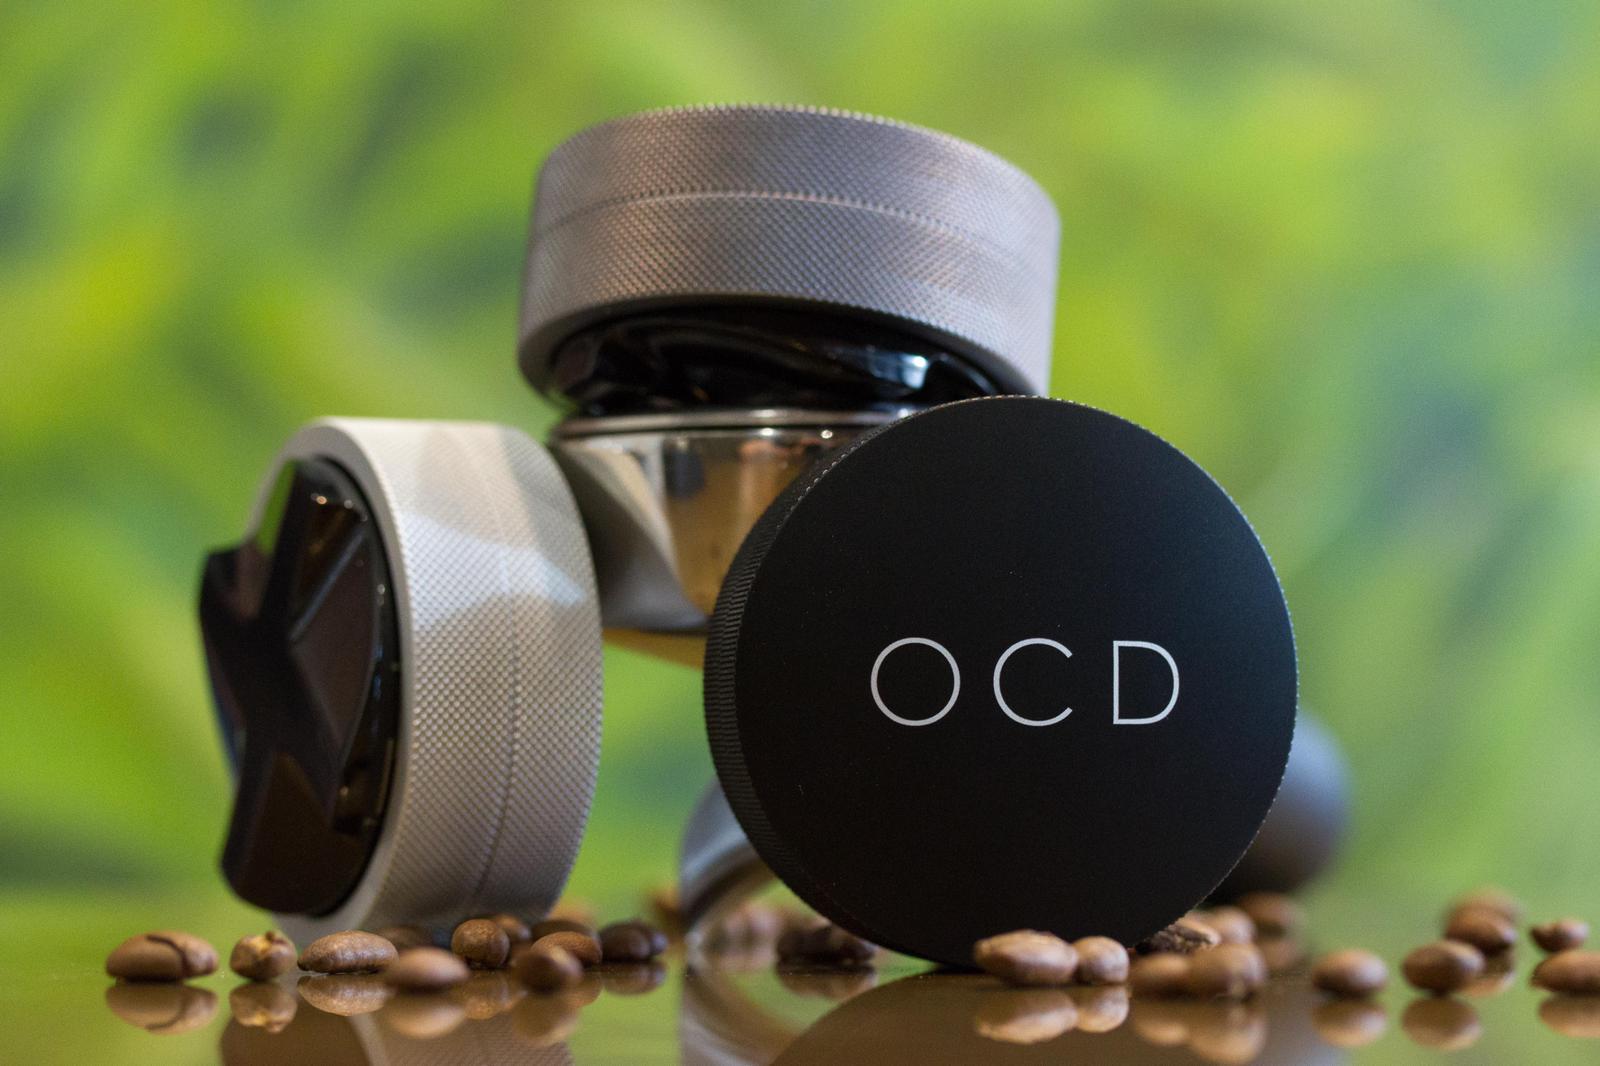 【販売終了】OCD ONA Coffee Distribution Tool Version 3 チタニウム